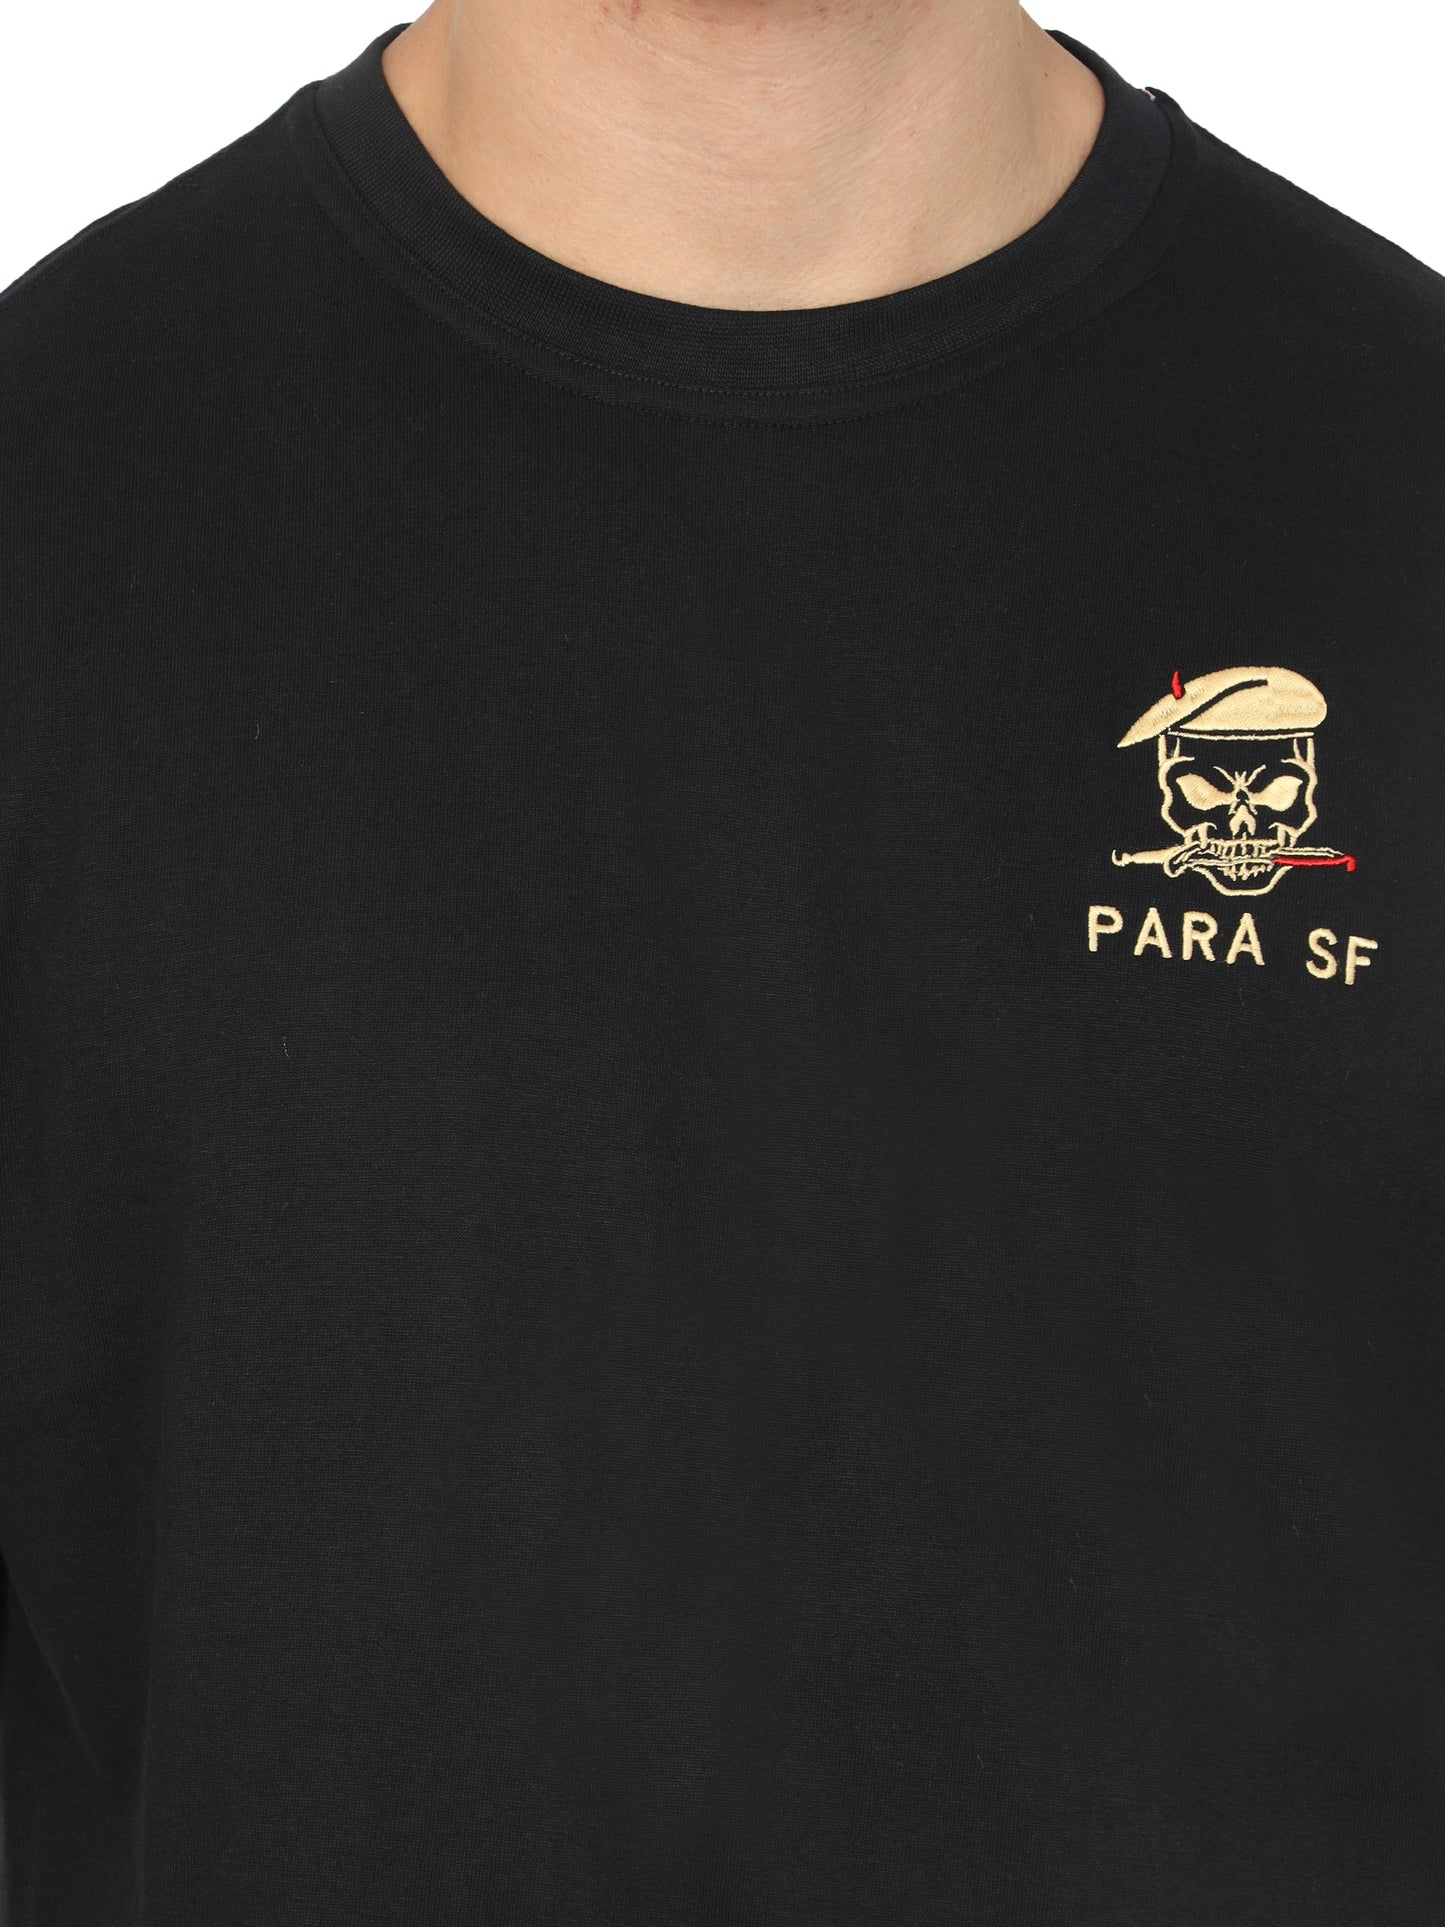 PARA SF | ROUND NECK T-SHIRT